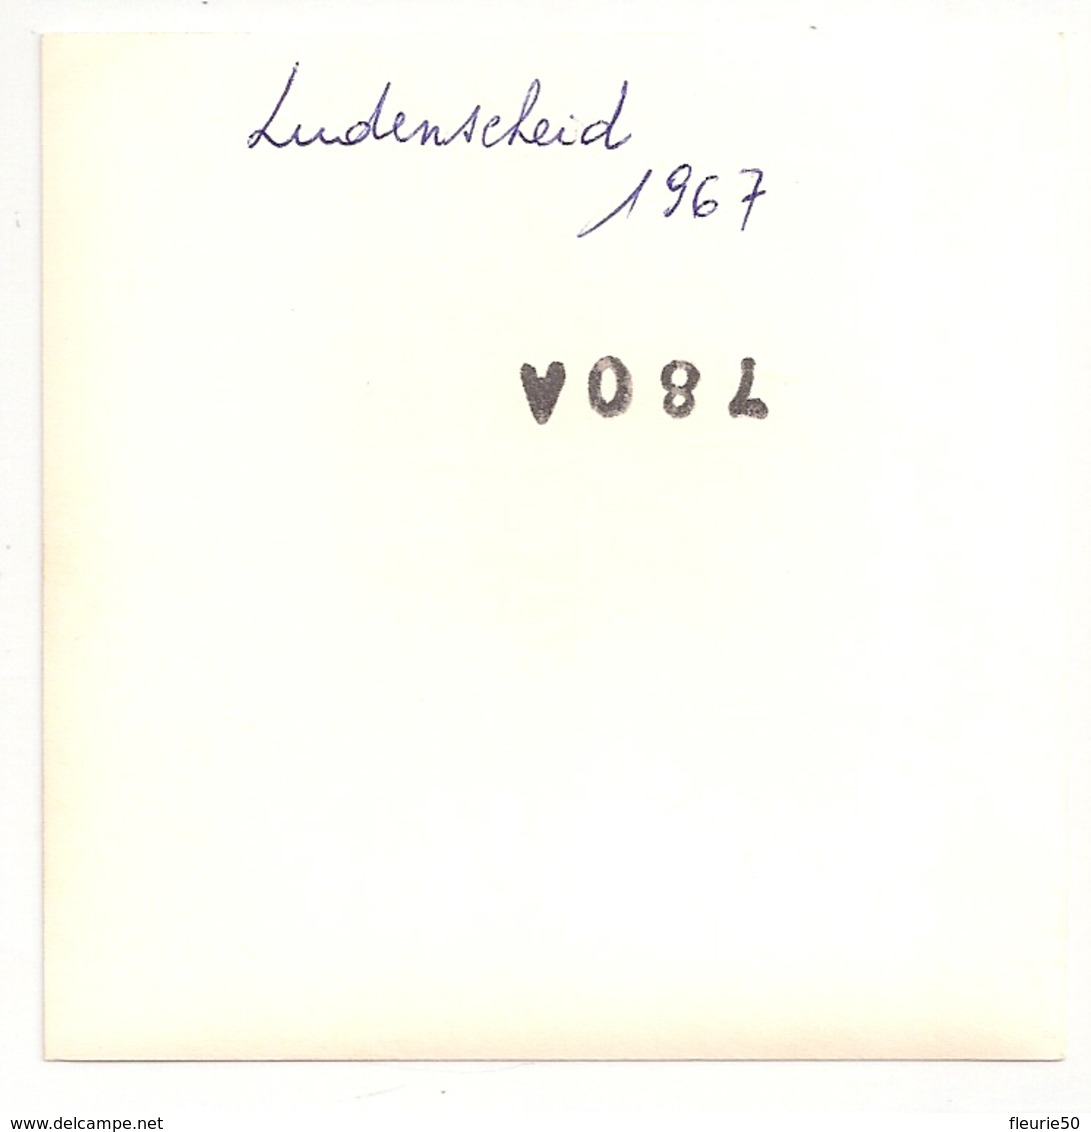 PHOTOS (2) - Infanterie 12eme De Ligne. Falo, Ludensheid 1967. 9cm X 9cm. - Guerre, Militaire